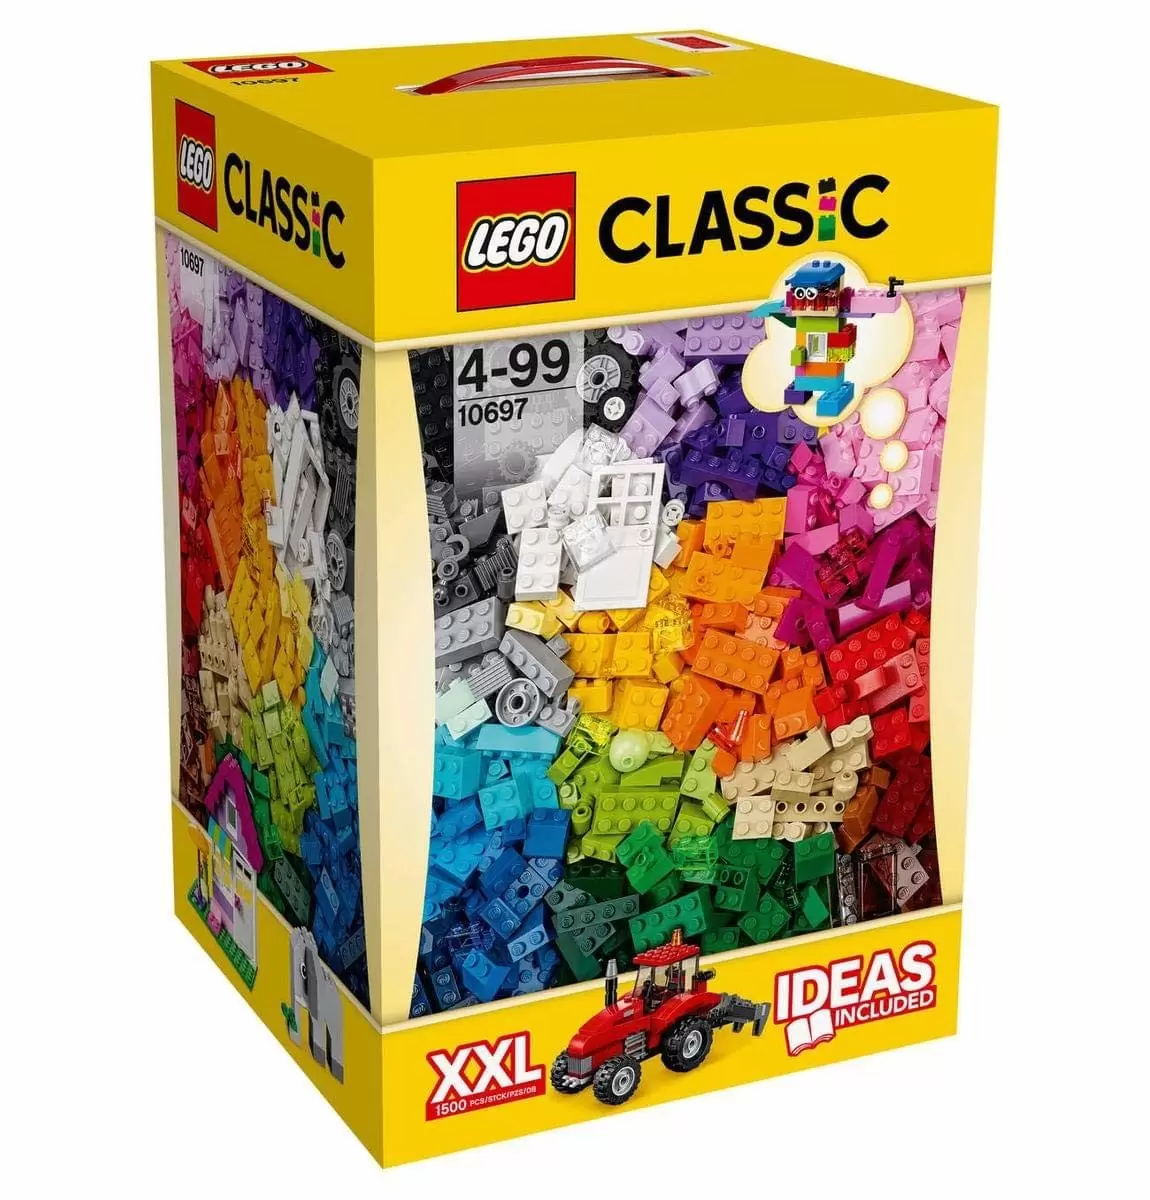 LEGO Classic - Large Creative Box